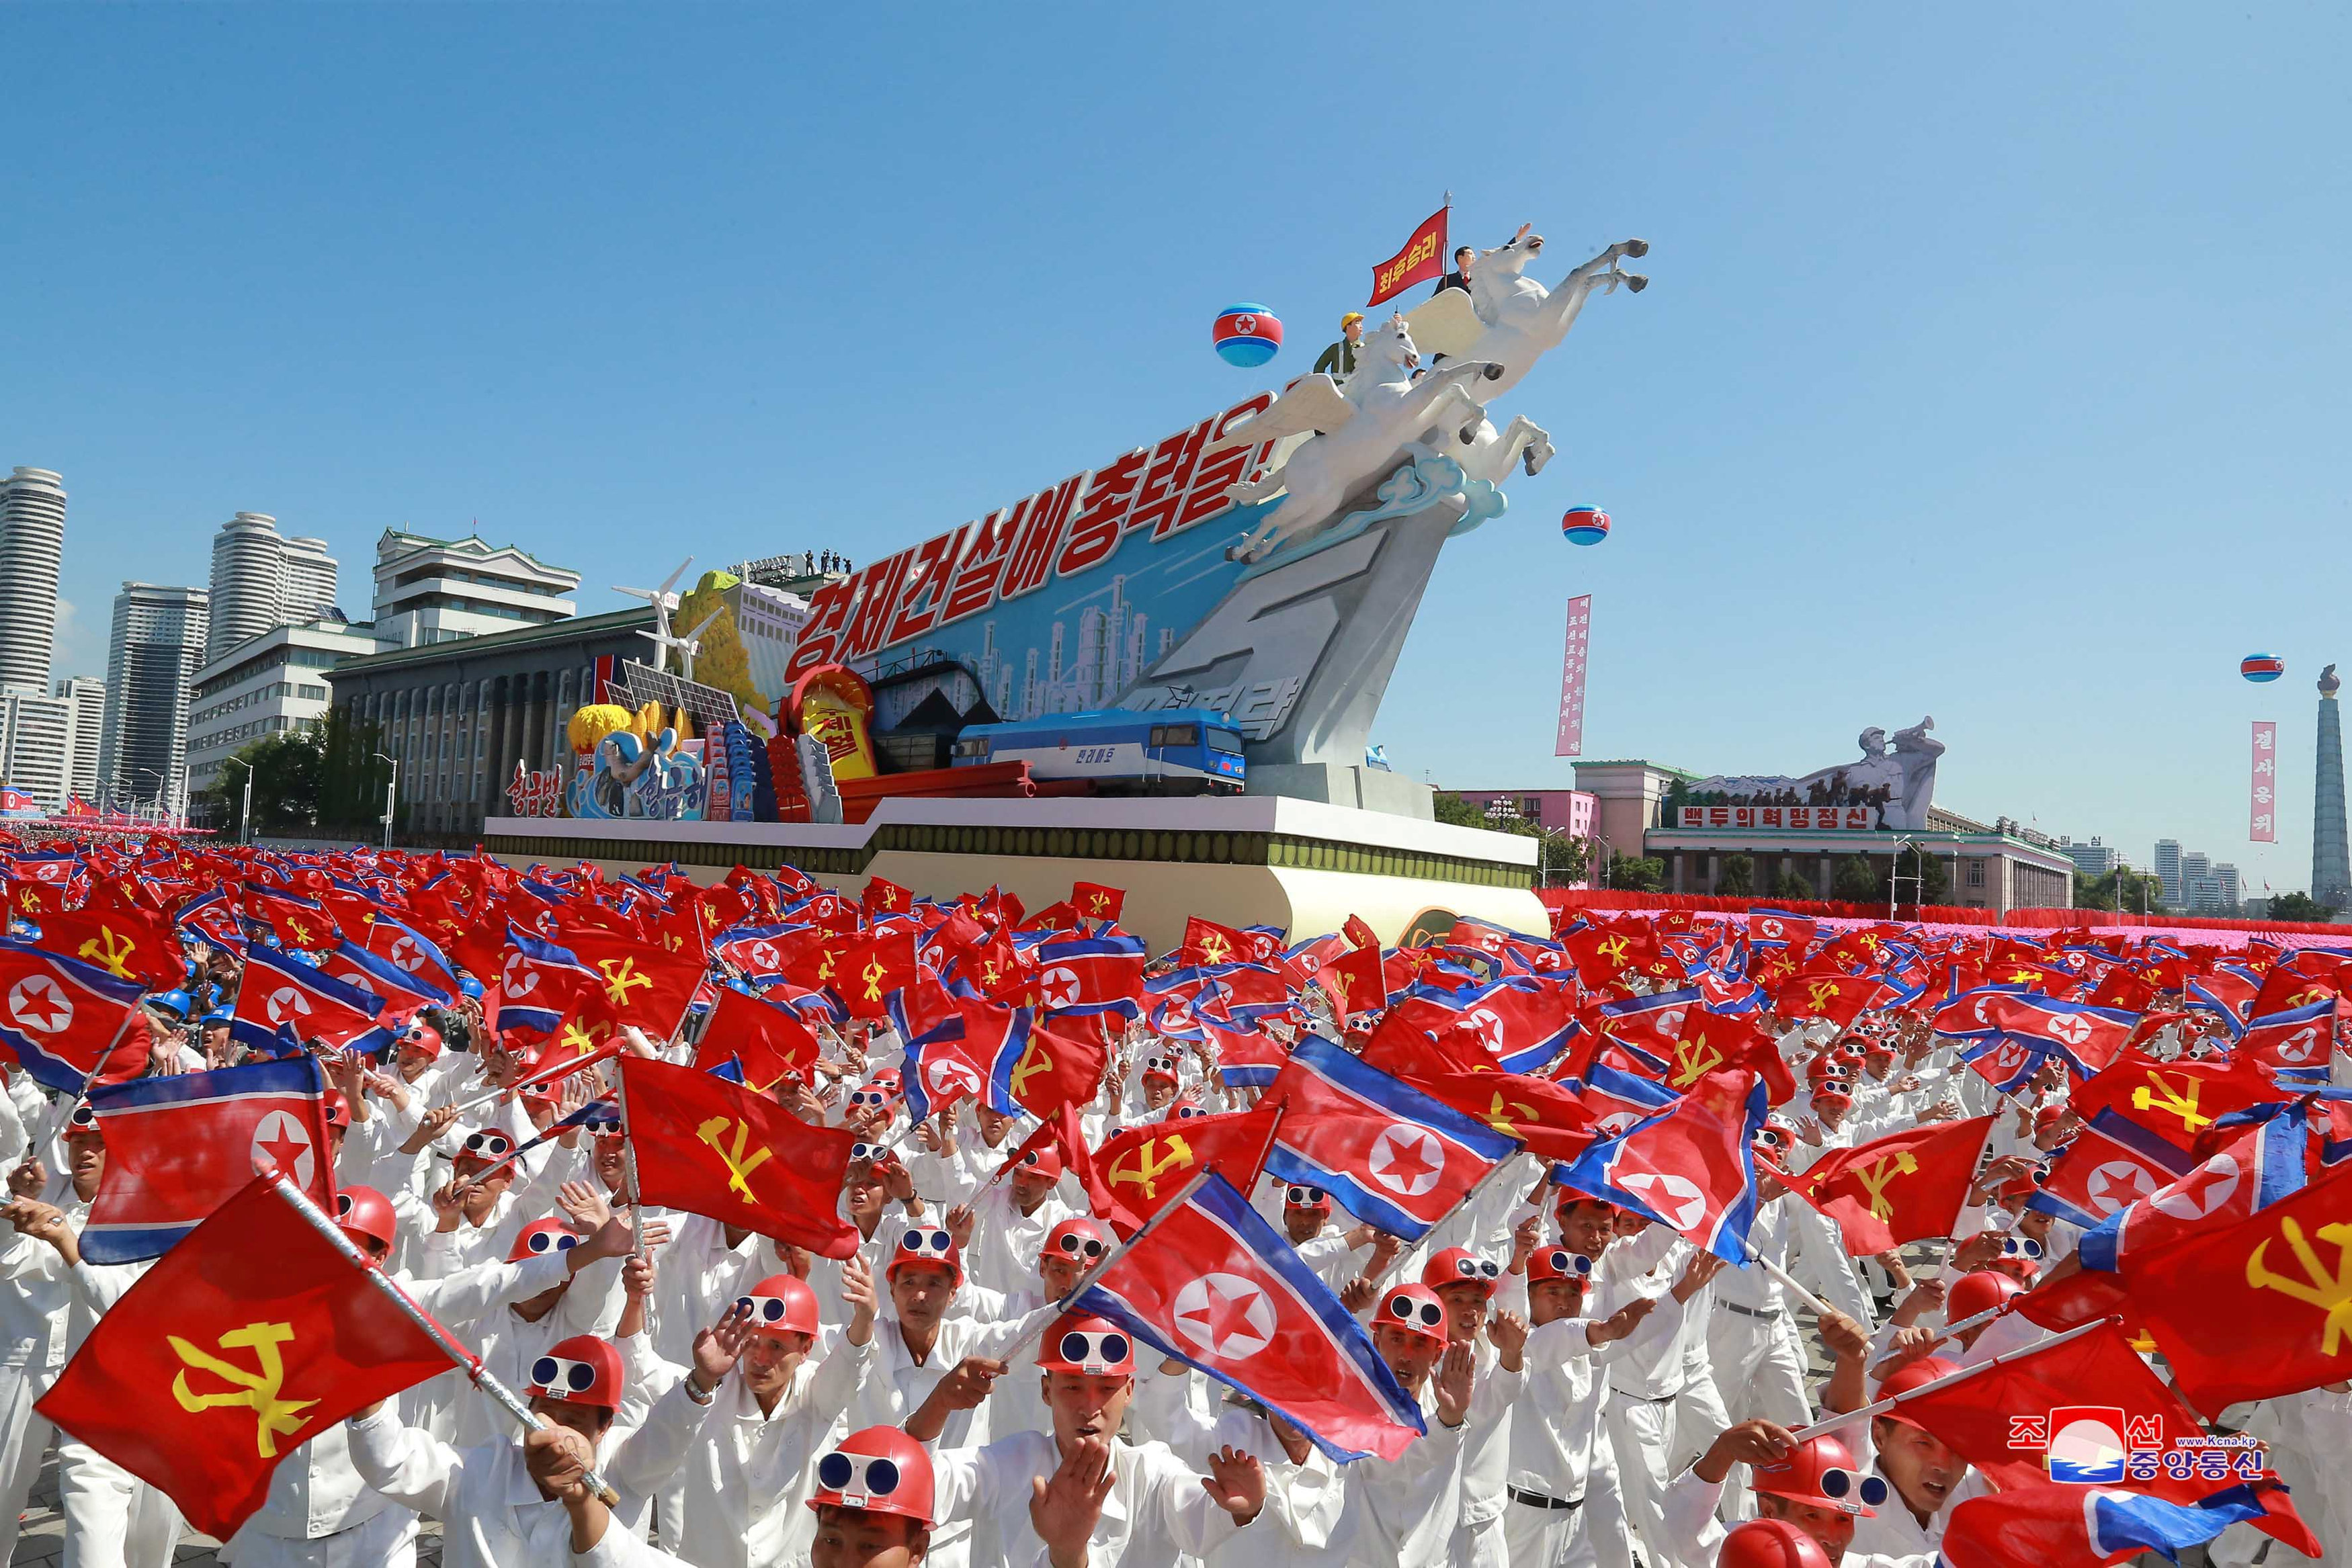 مواطنون يحملون أعلام كوريا الشمالية